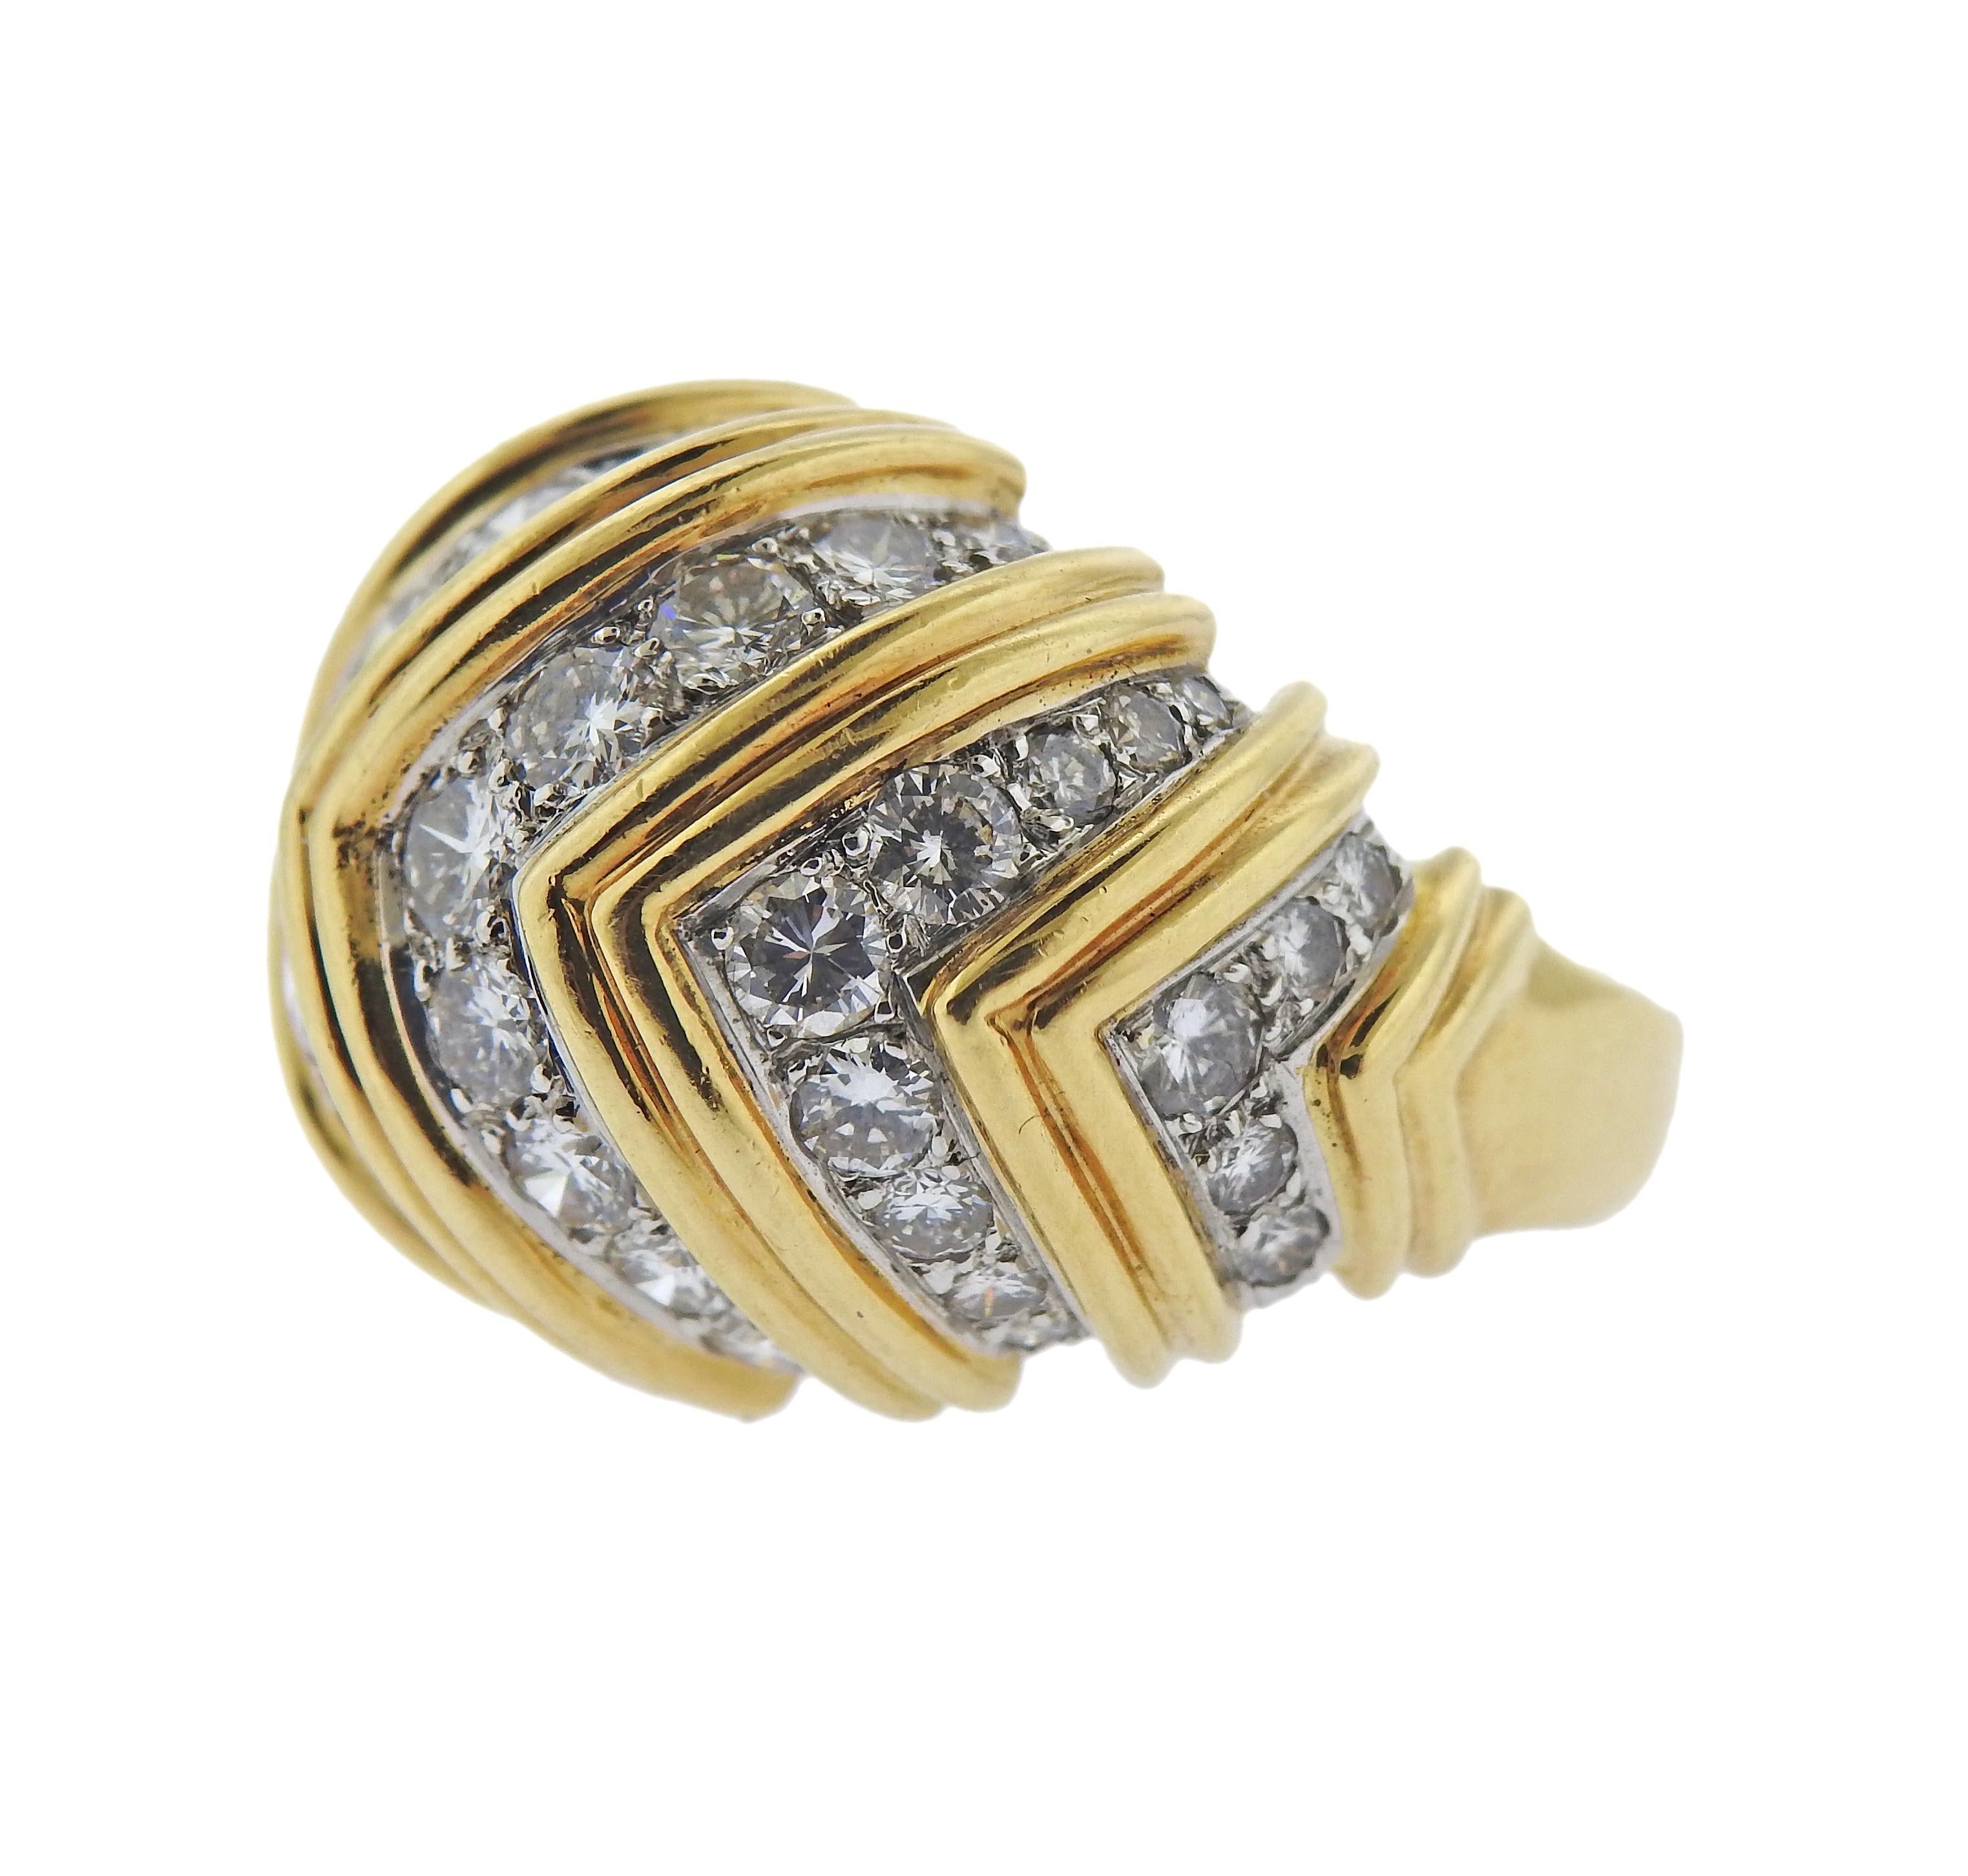 Bague dôme en or jaune et blanc 18k de Tiffany & Co, avec environ 3 carats de diamants. Taille de l'anneau - 7, haut de l'anneau - 18 mm de large. Marqué : Tiffany & Co (sous la tige). Poids - 18.2 grammes.